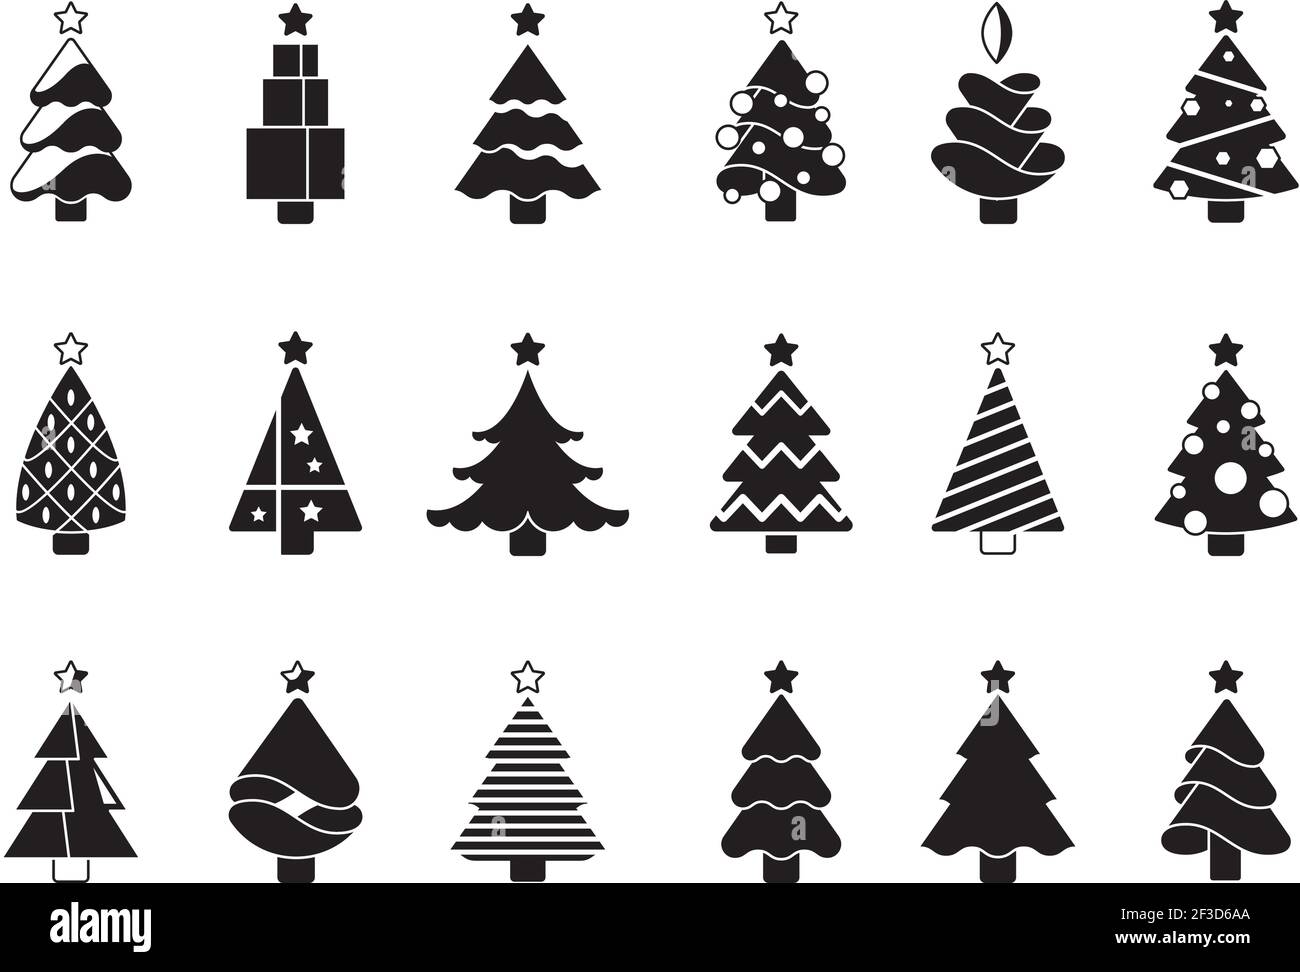 Weihnachtsbaum Silhouette. Einfache Symbole der Weihnachtsfeier original dekoriert Pflanzen Vektor-Symbol-Bilder Stock Vektor